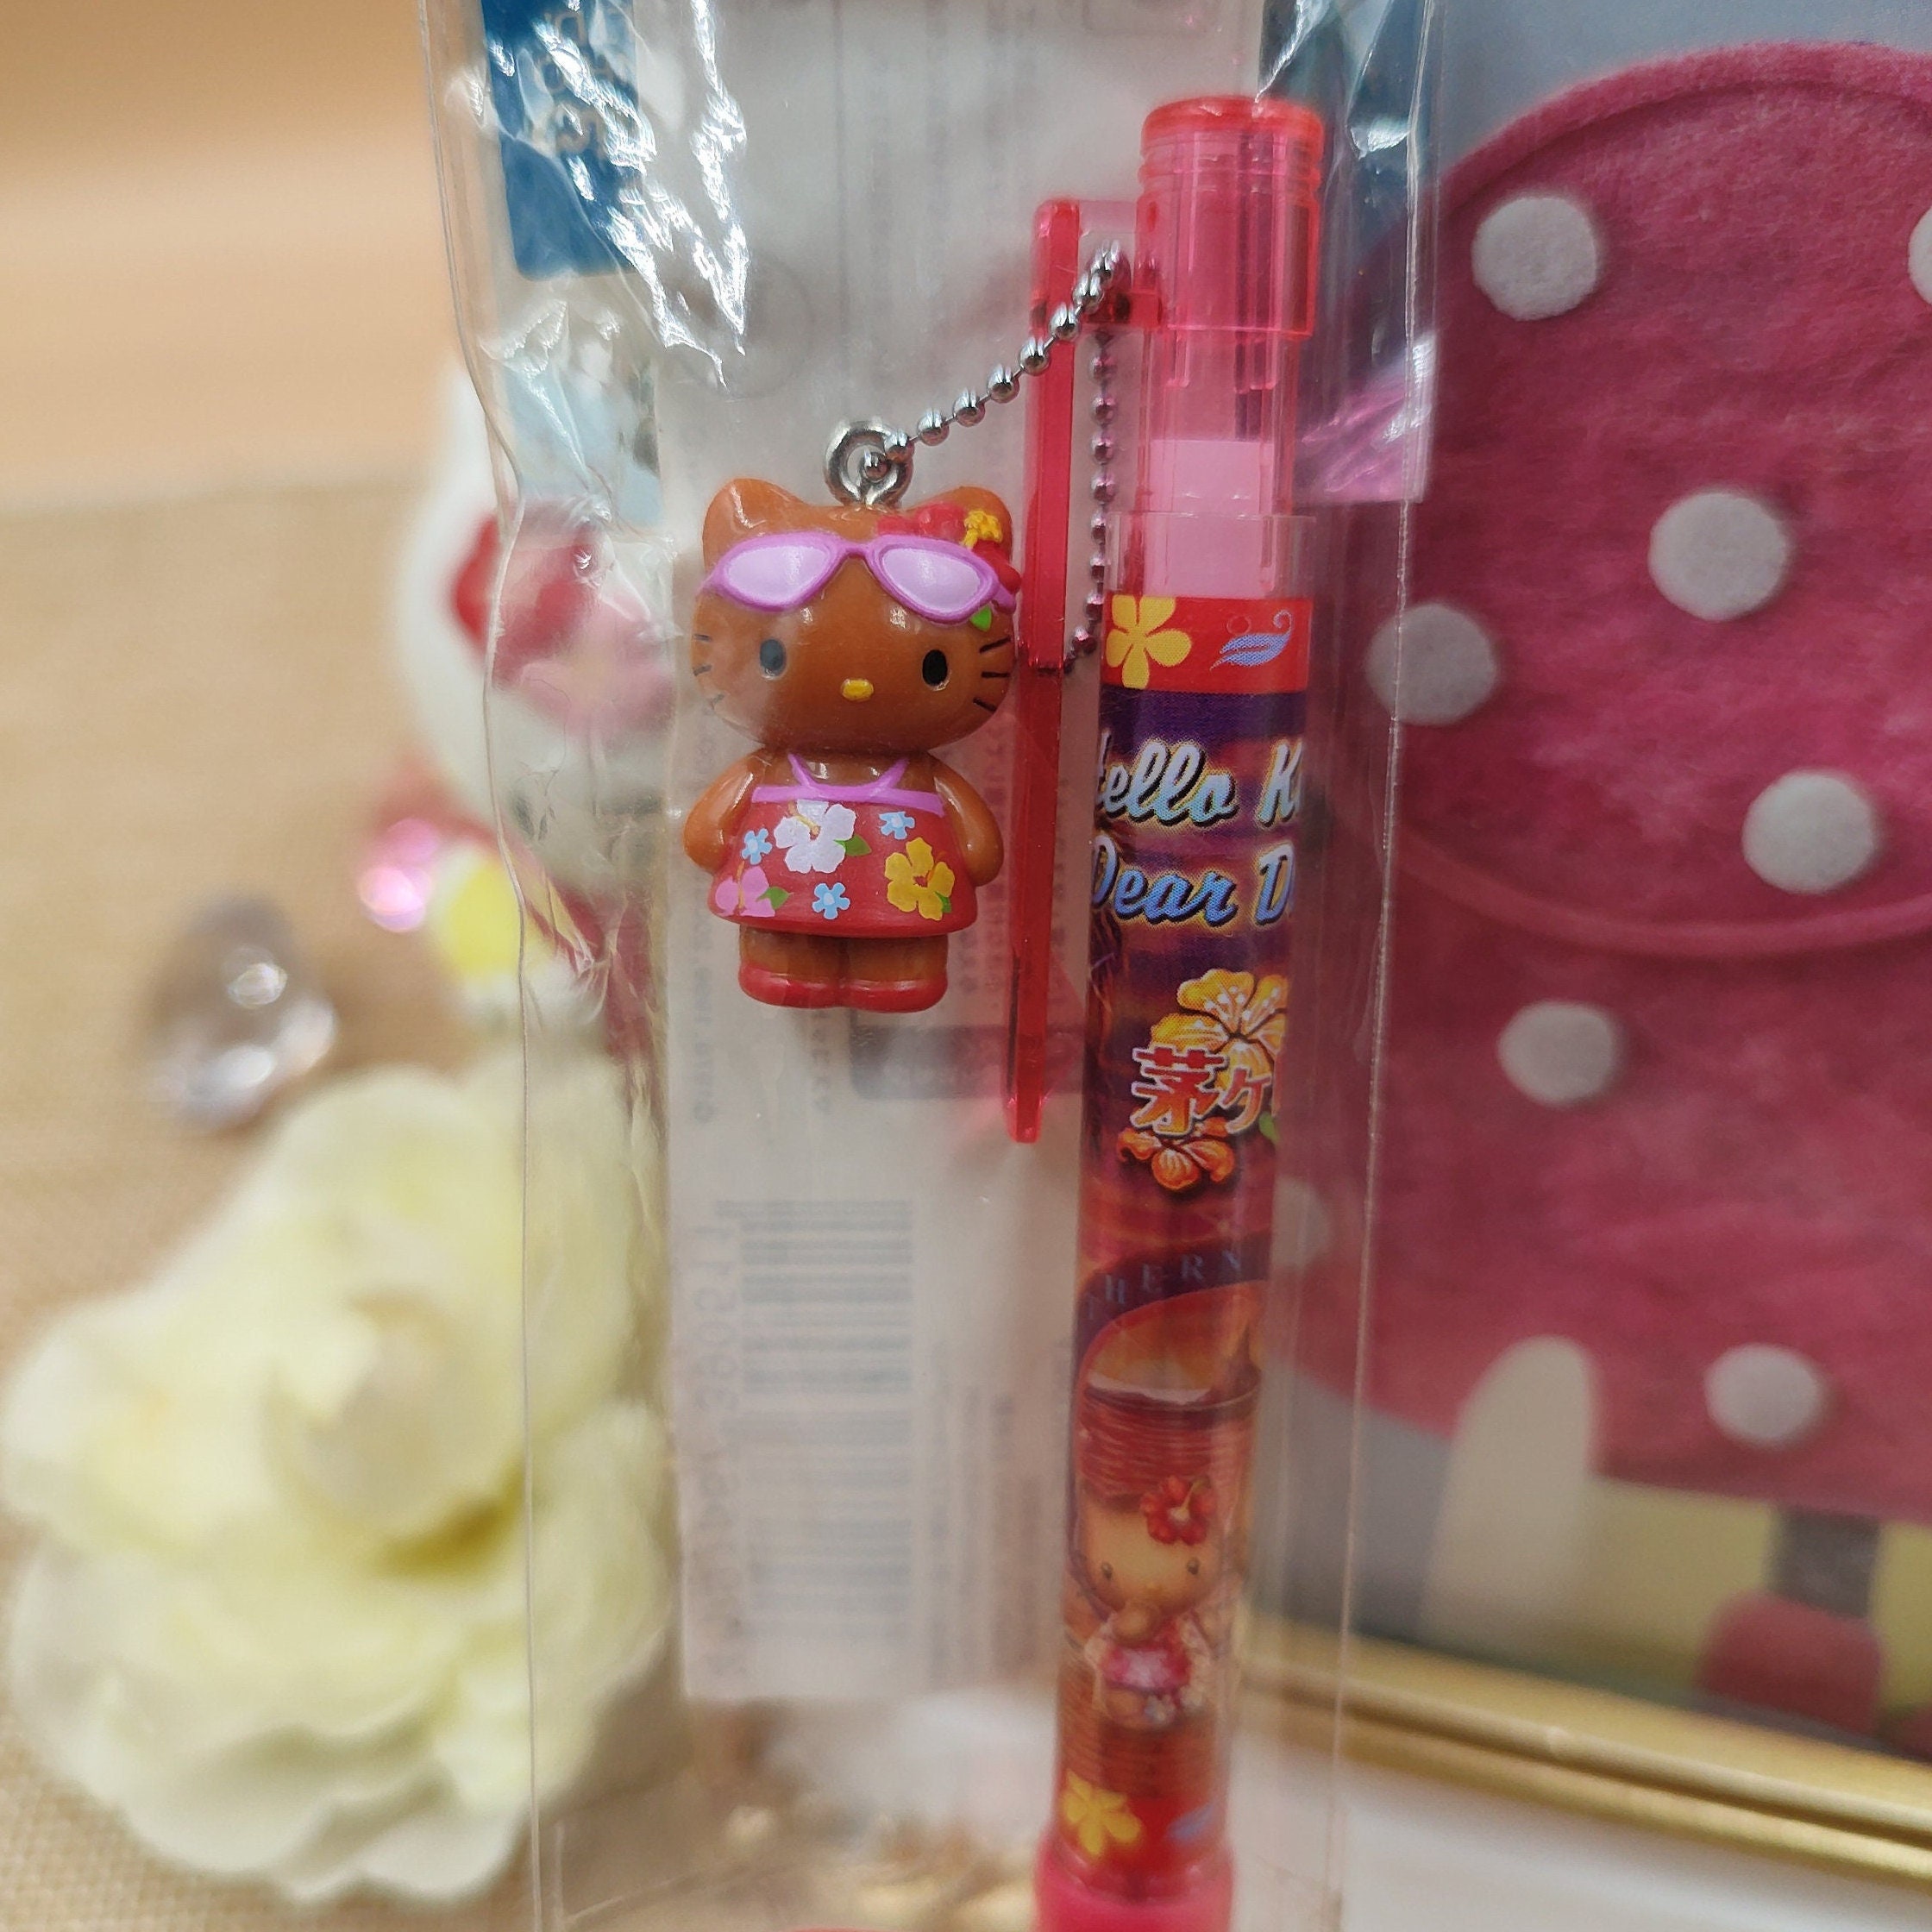 Hello Kitty Icons Pencil Set